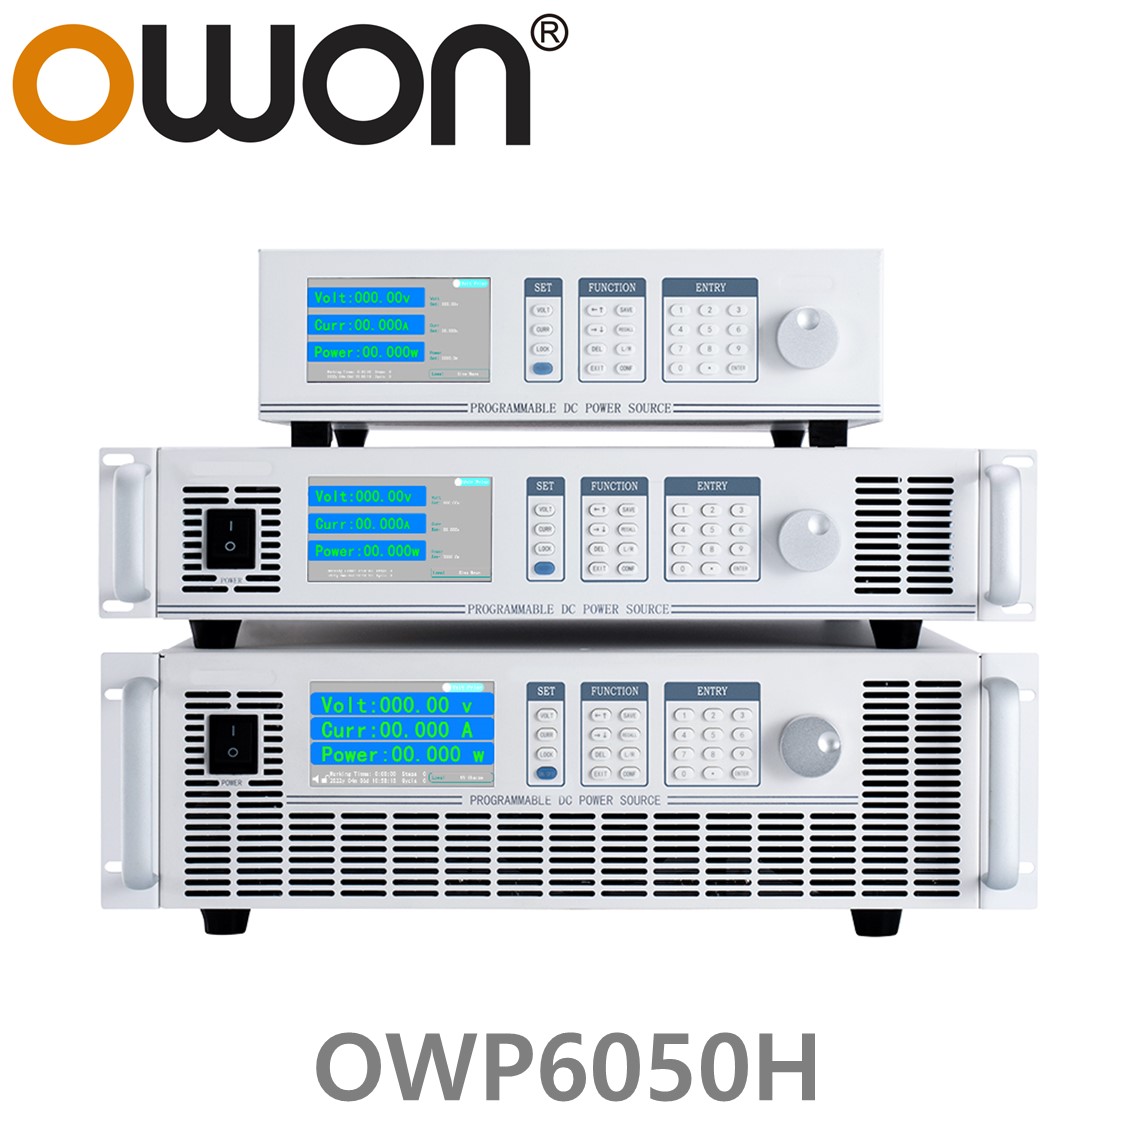 [ OWON ] OWP6050H 고전력 DC파워서플라이, 0-500.00V / 0-20.000A / 6000.0W DC전원공급장치